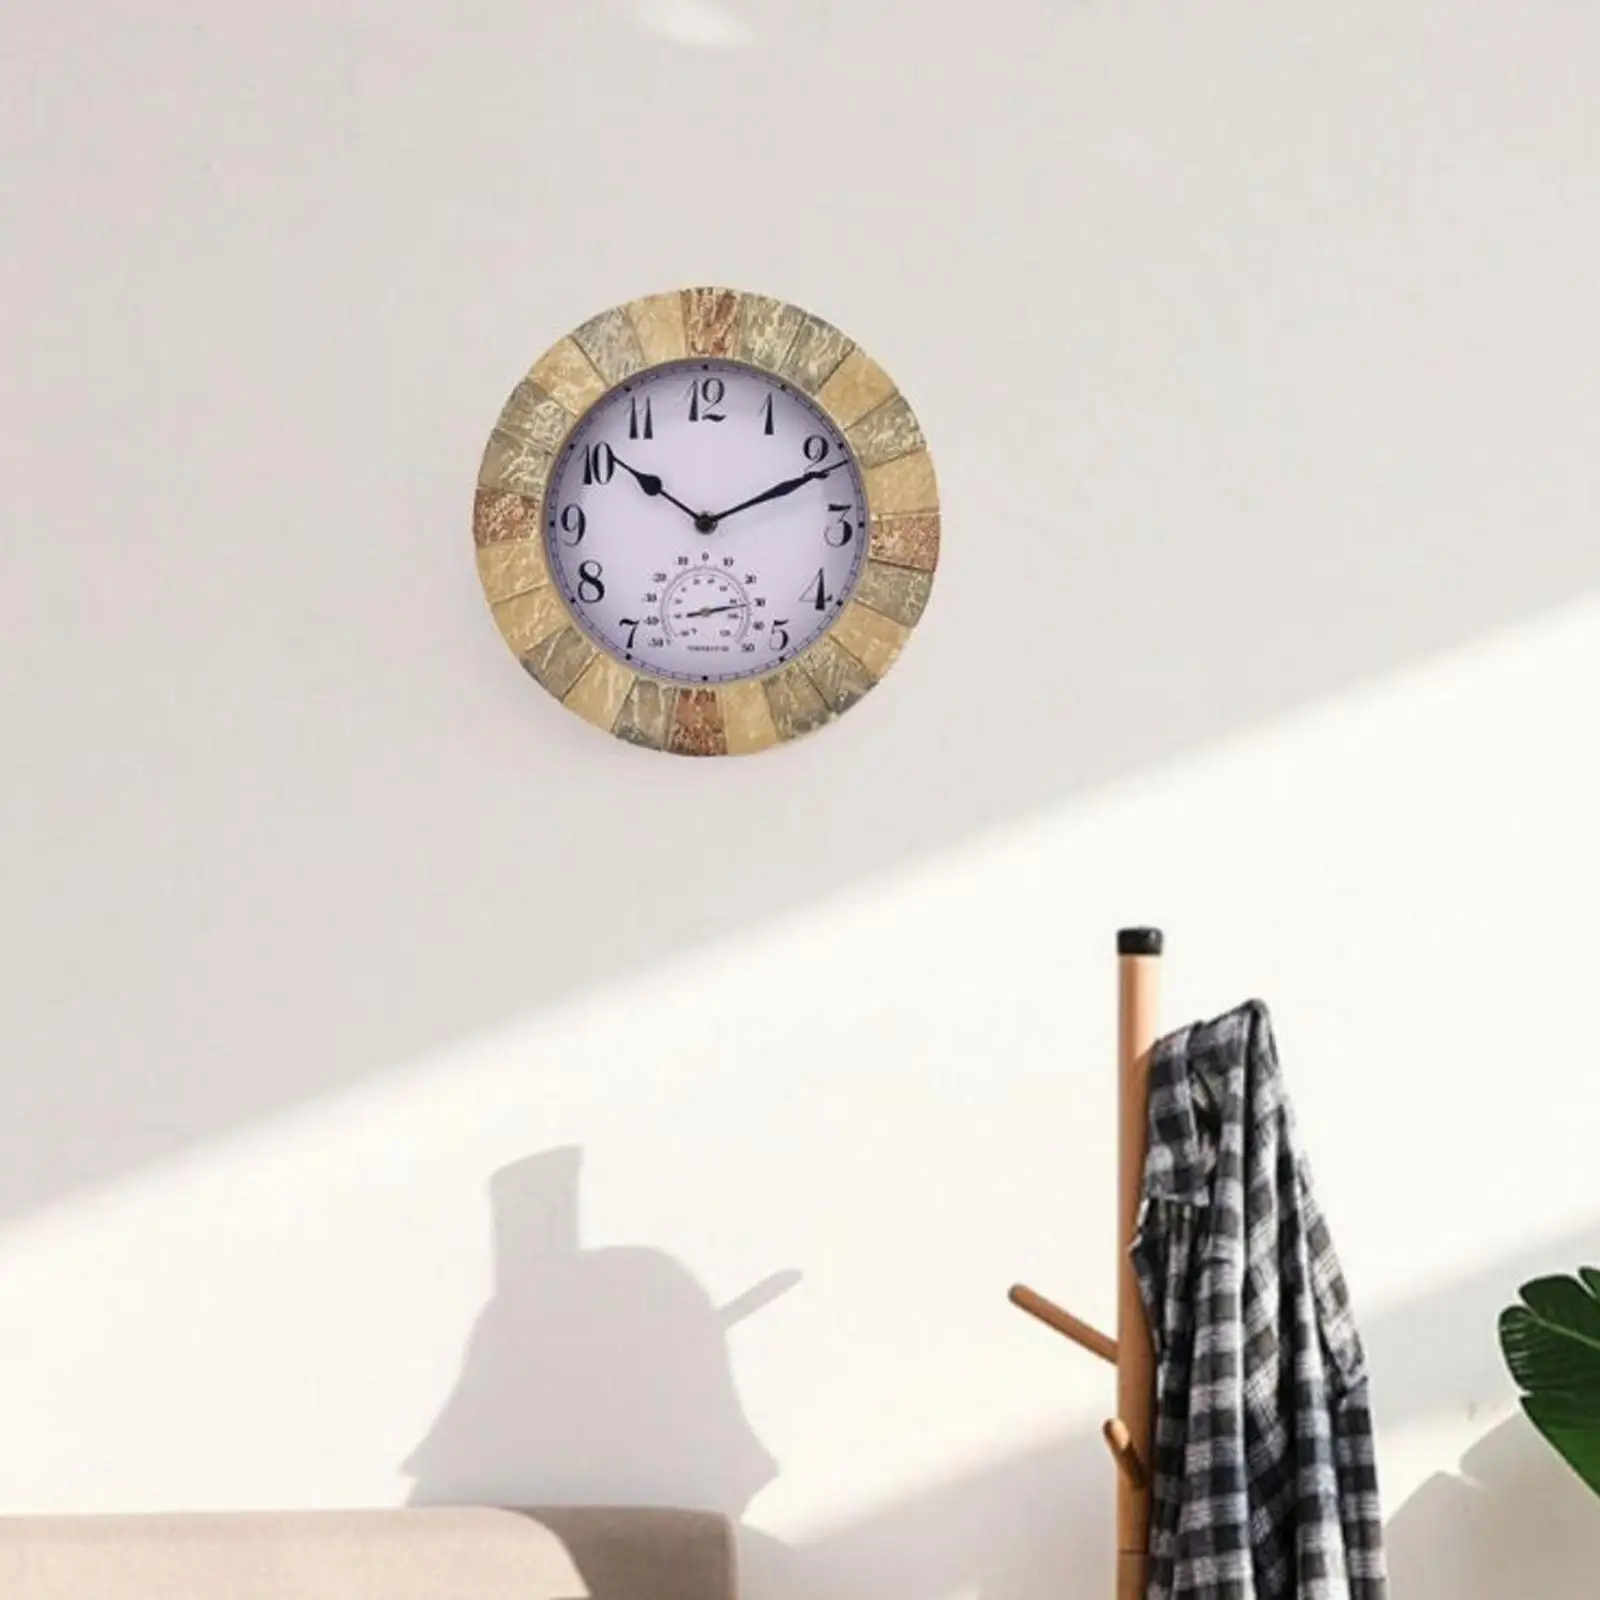 Multipurpose Outdoor Wall Clock Waterproof with Temperature Silent 10inch Clocks for Garden Bedroom Living Room Bathroom